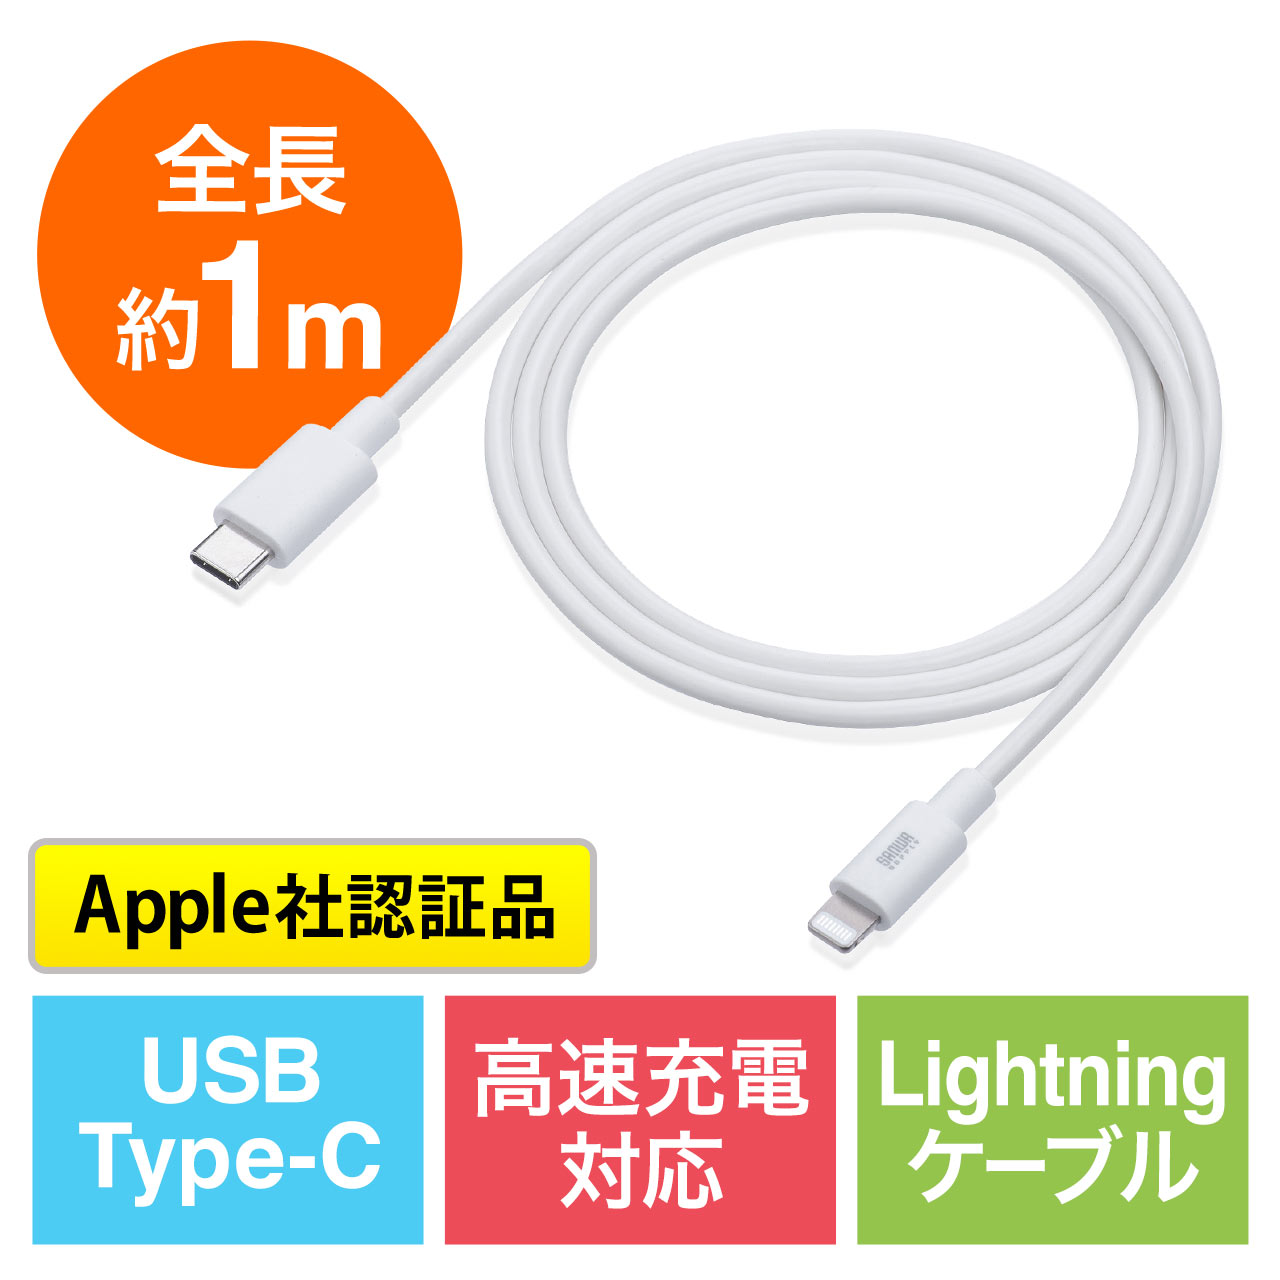 Usb Type C ライトニングケーブル Lightningケーブル Apple Mfi認証品 Usb Pd 充電 同期 1m ホワイト 500 Iplm024wの販売商品 通販ならサンワダイレクト